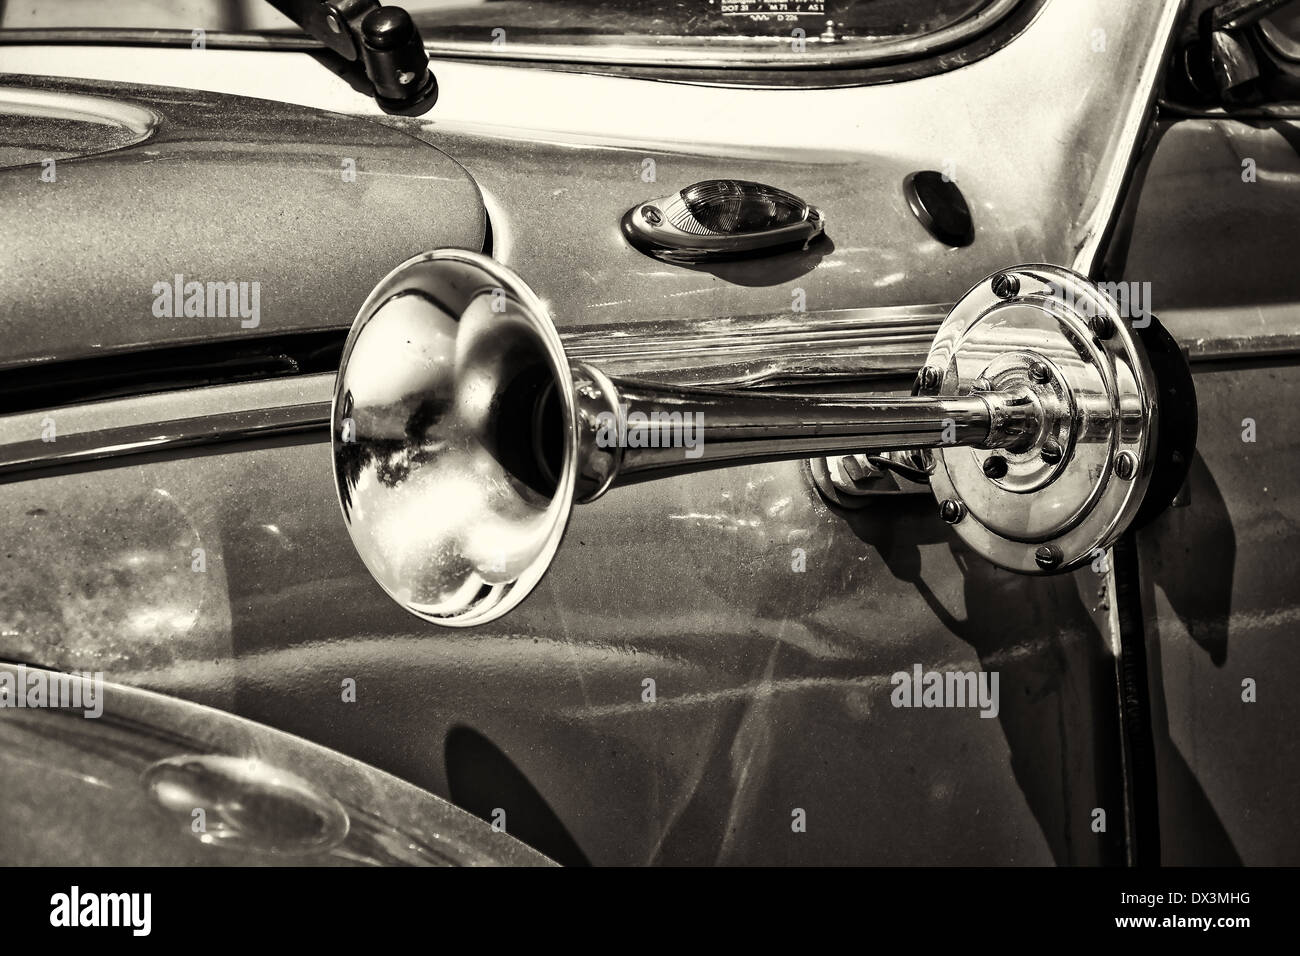 Klaxon de voiture ancienne photo stock. Image du véhicule - 39420342